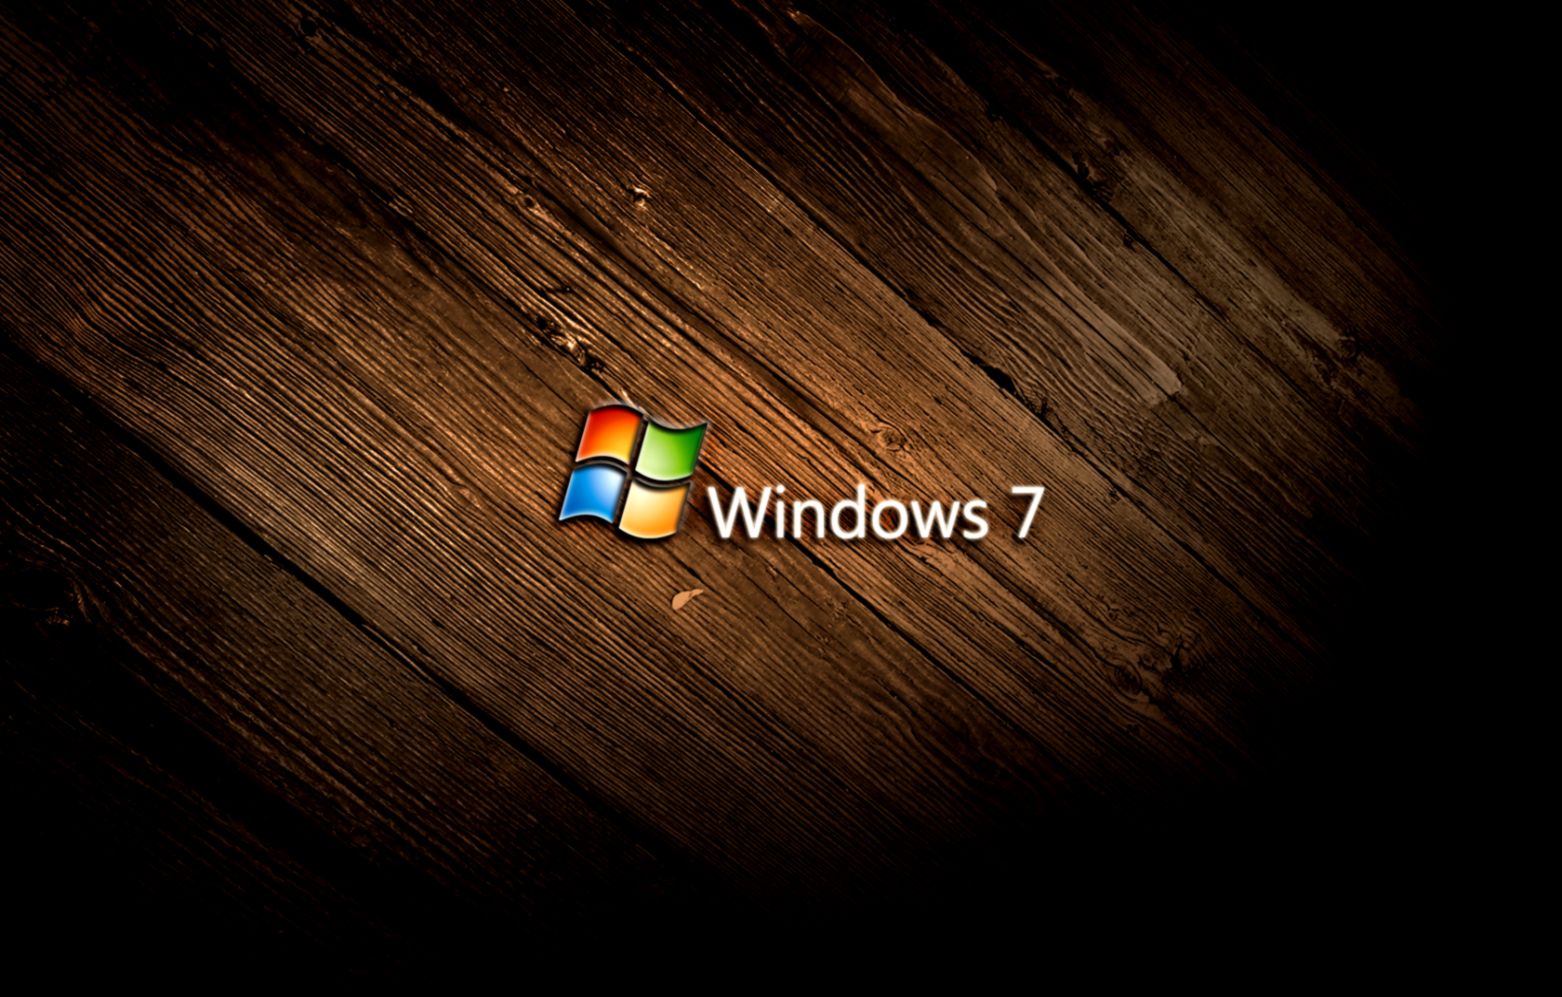 Tải hình nền Windows 7 miễn phí: Cập nhật màn hình máy tính của bạn với những hình nền độc đáo và đẹp mắt. Tải ngay hình nền Windows 7 miễn phí và làm mới không gian làm việc của bạn.